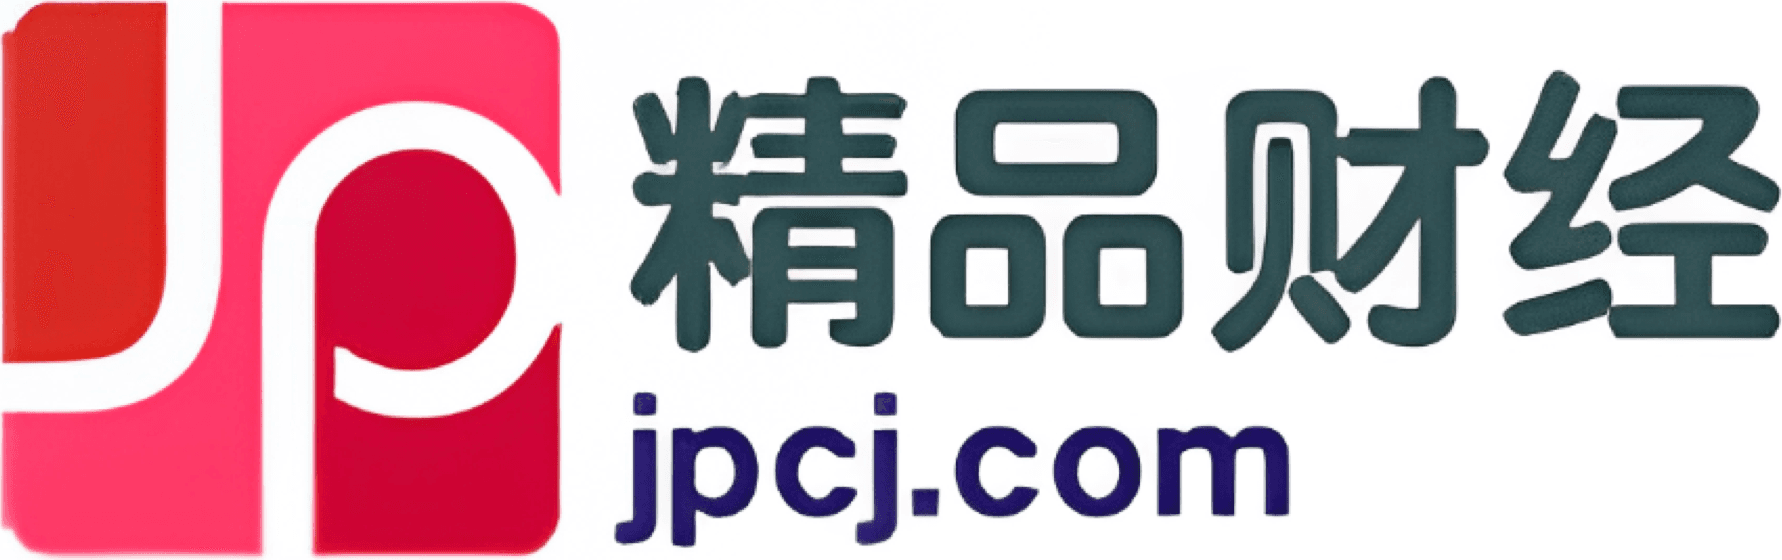 Jpcj.com